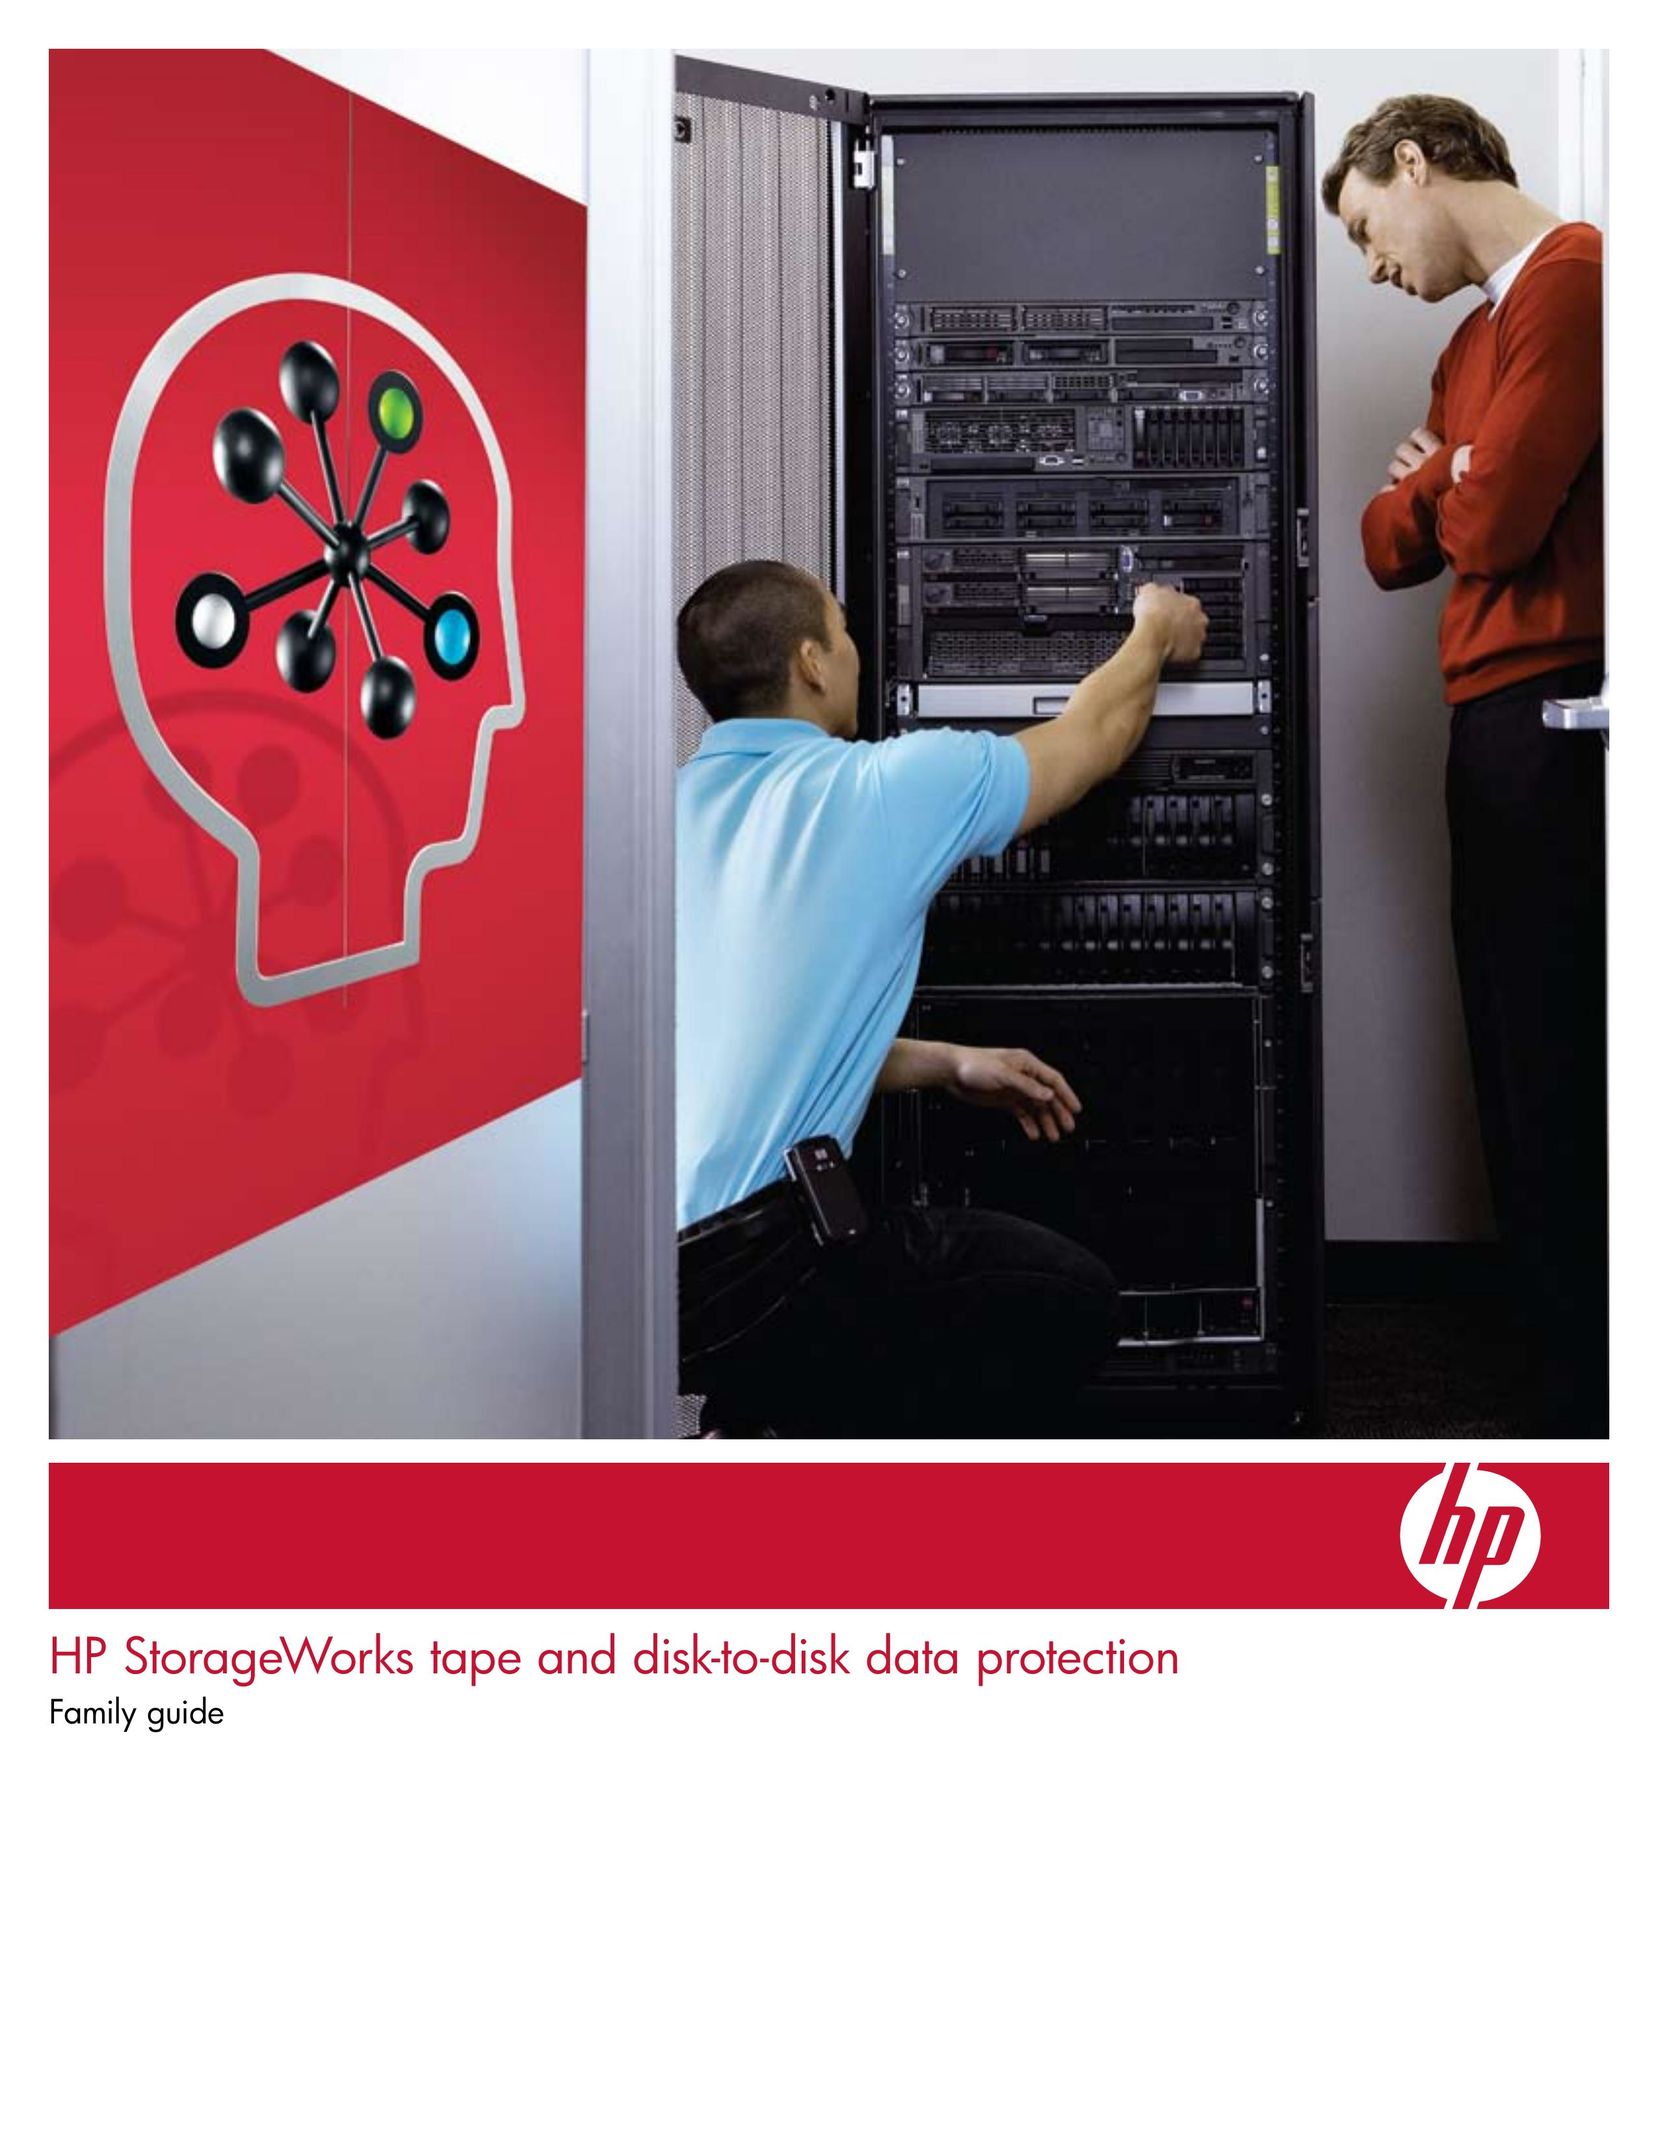 HP (Hewlett-Packard) D2D2503i Computer Drive User Manual